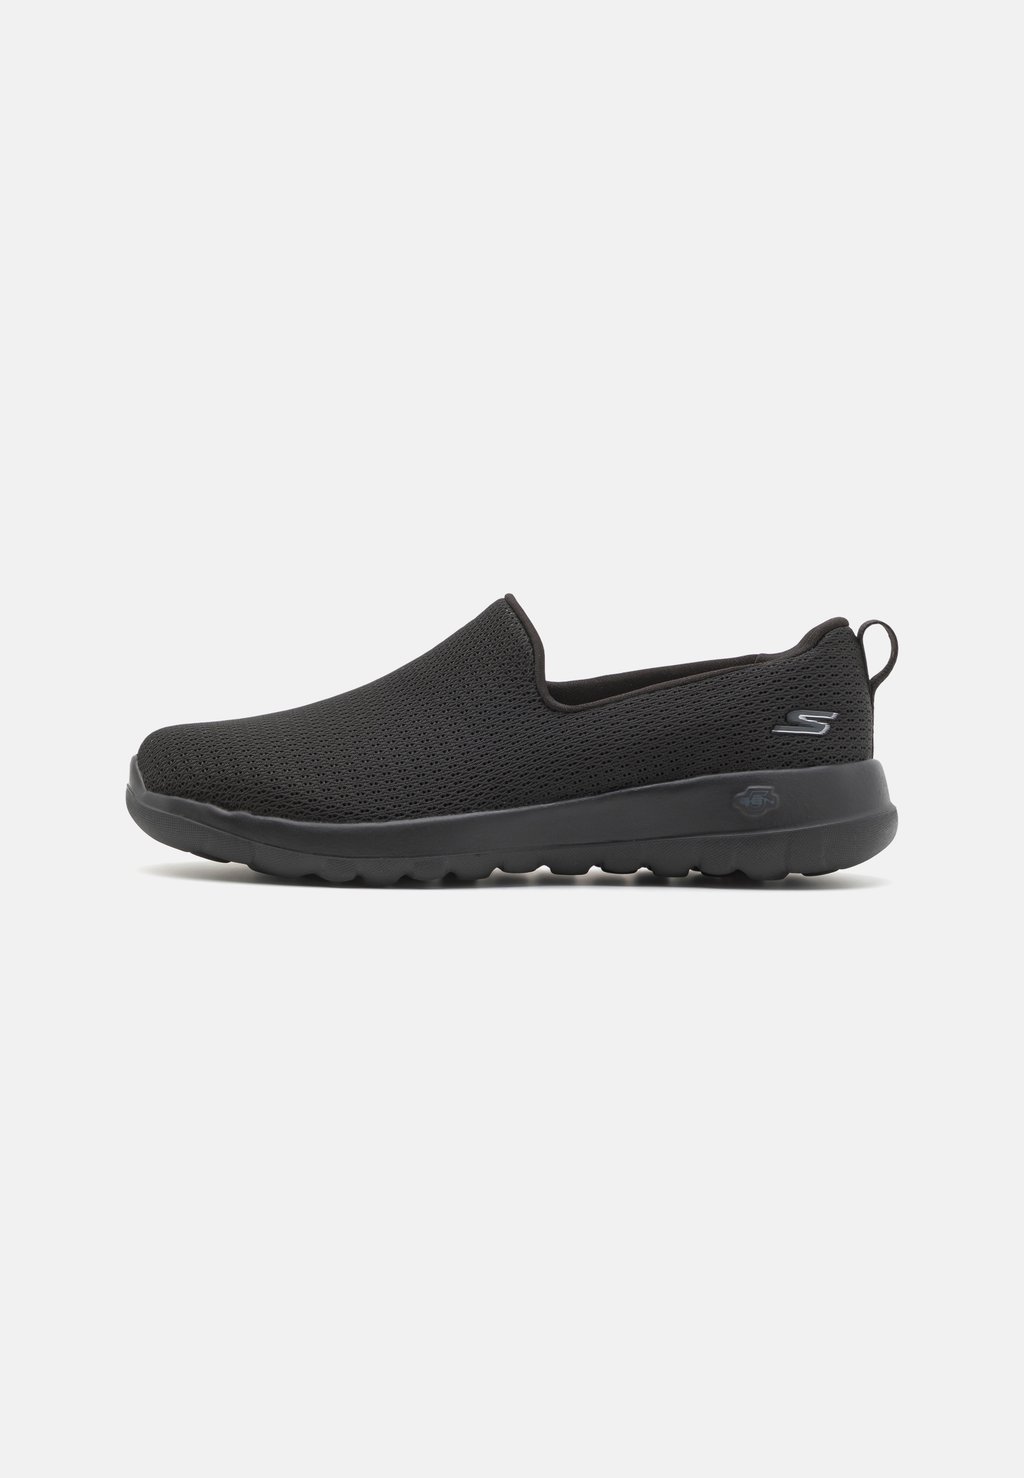 Обувь для ходьбы GO WALK SLIP ON Skechers Performance, цвет black обувь для ходьбы go walk slip on skechers performance цвет black